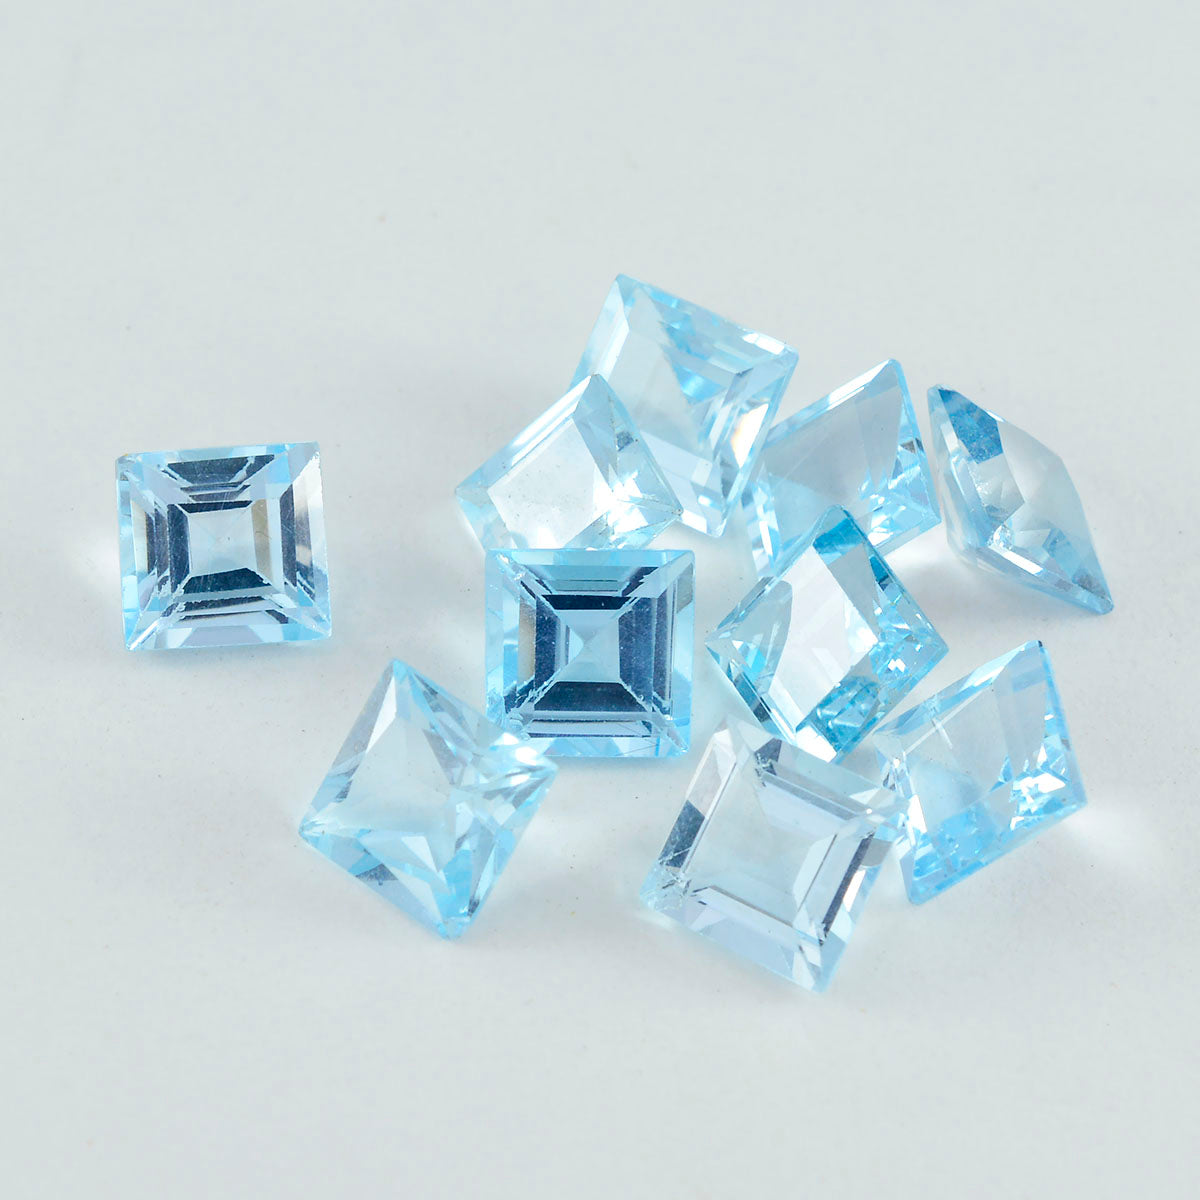 Riyogems 1 Stück echter blauer Topas, facettiert, 6 x 6 mm, quadratische Form, schöner Qualitätsstein